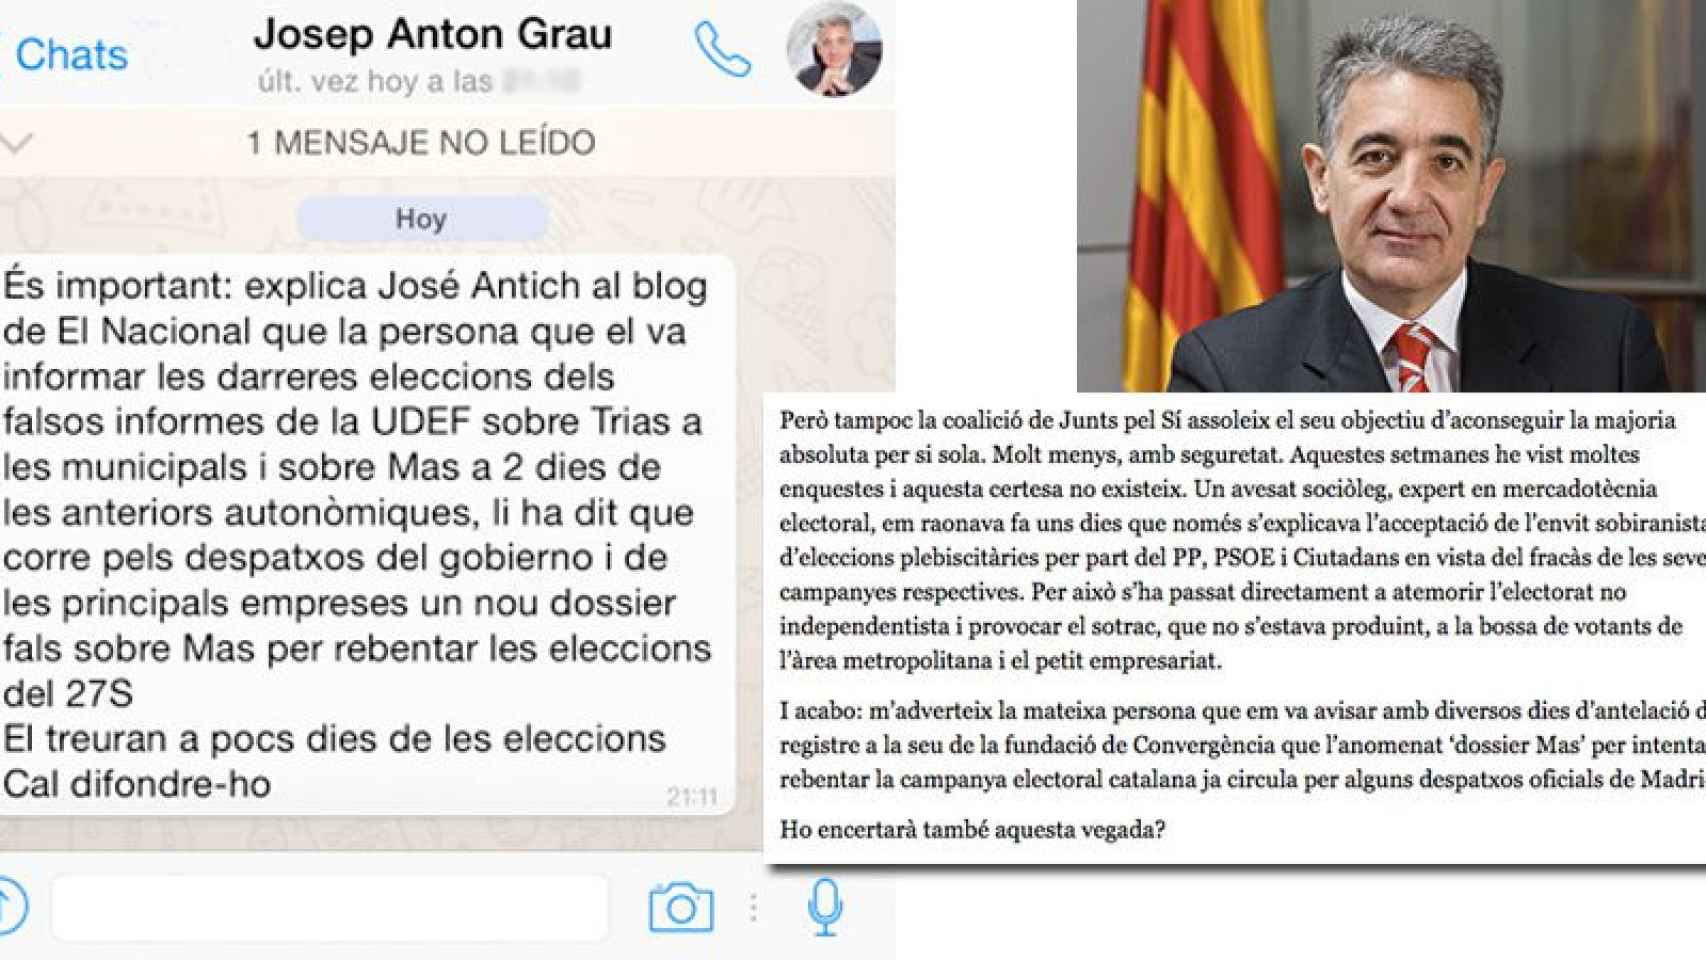 Mensaje difundido por Grau --en la imagen-- a través de listas de Whatsapp (izquierda) y comentario publicado por José Antich en su blog (derecha)